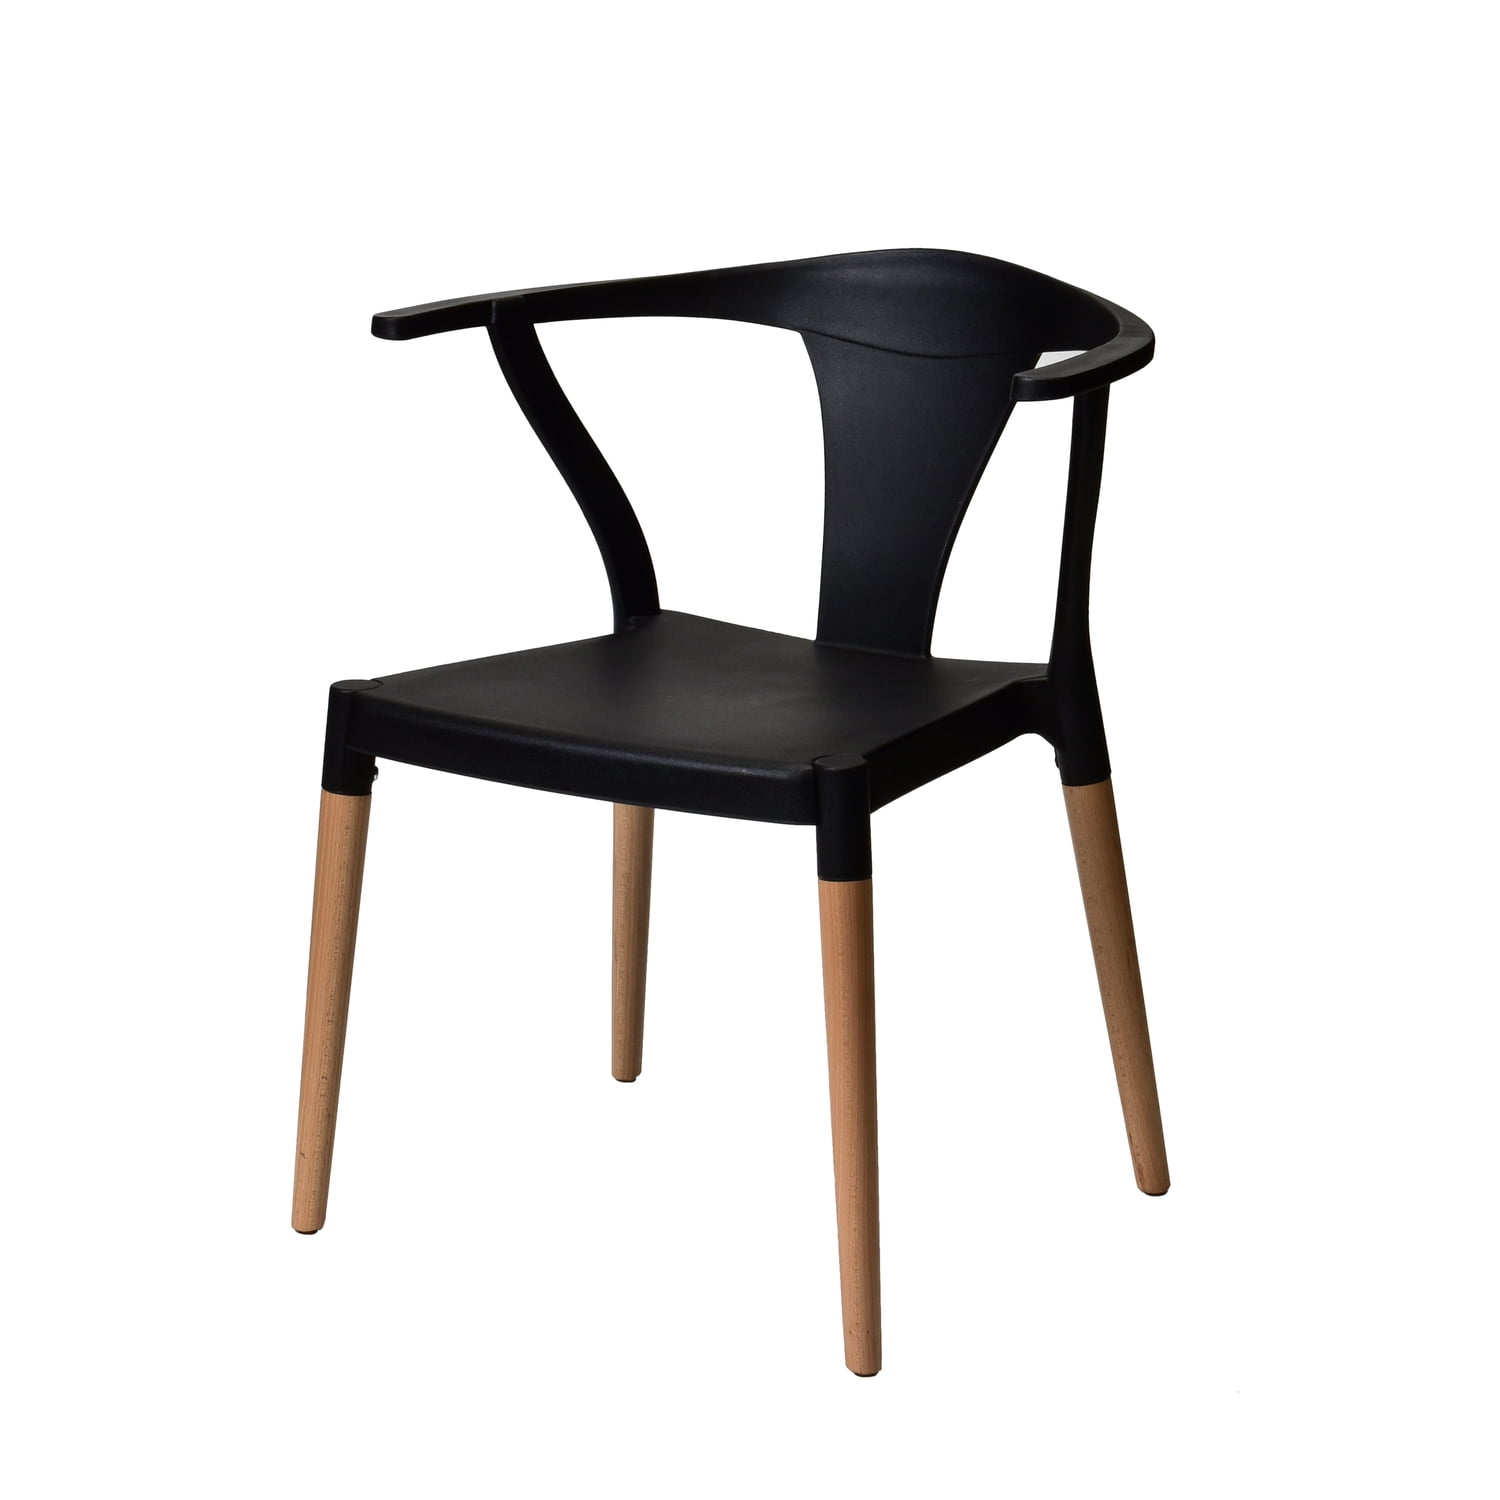 Cdpw1002-zsfp-bk-4 Mid Century Modern Side Chair - Black - 30 In. - Set Of 2